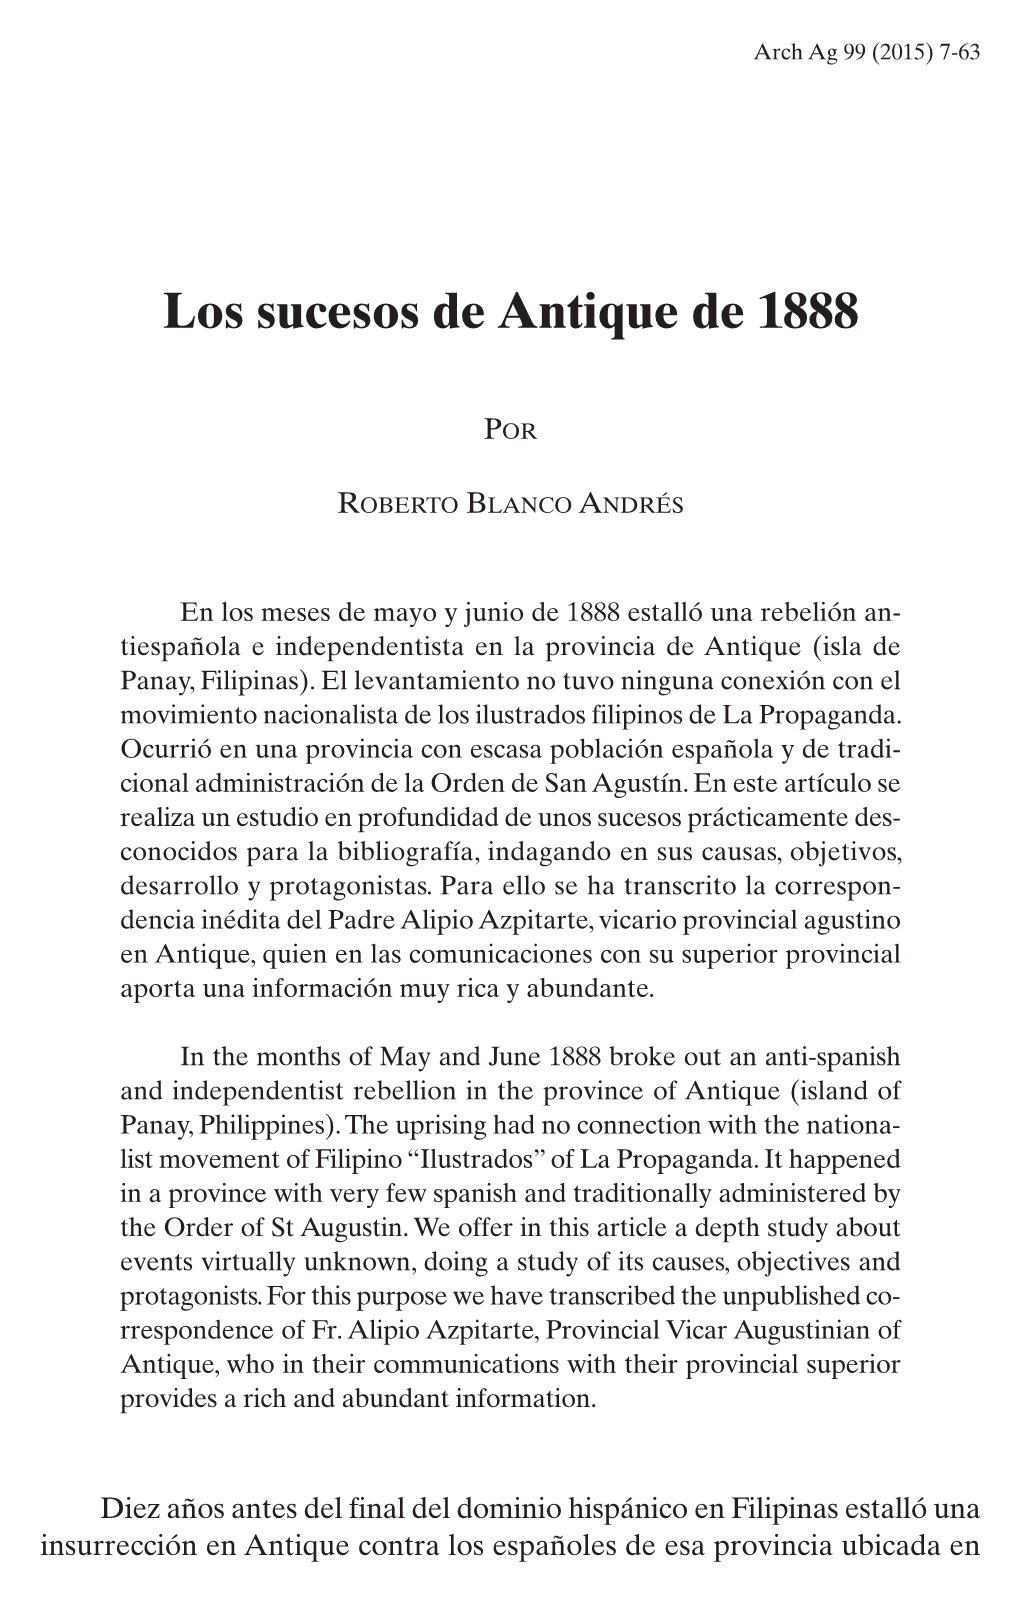 Roberto BLANCO ANDRÉS, Los Sucesos De Antique De 1888, Pp. 7